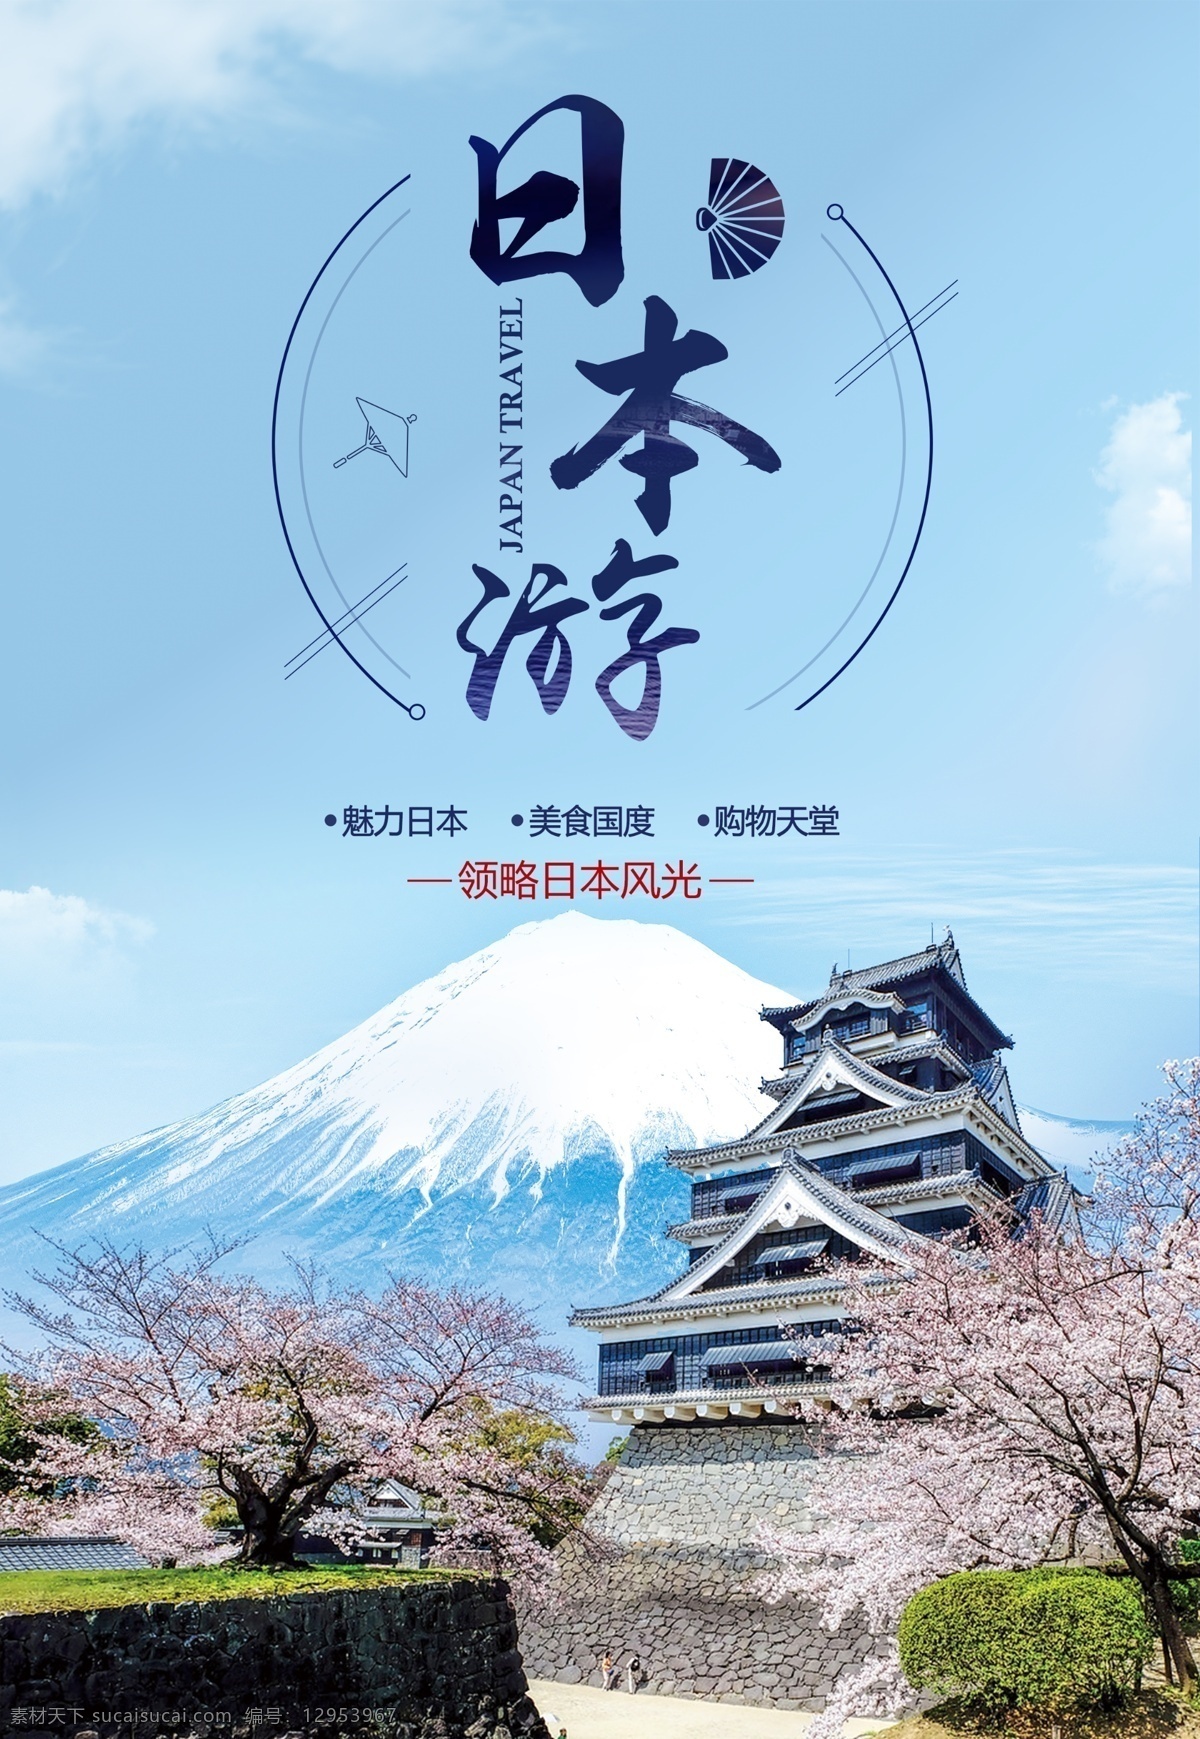 日本游 日本旅游 日本 本州风情 富士山 大阪城 樱花